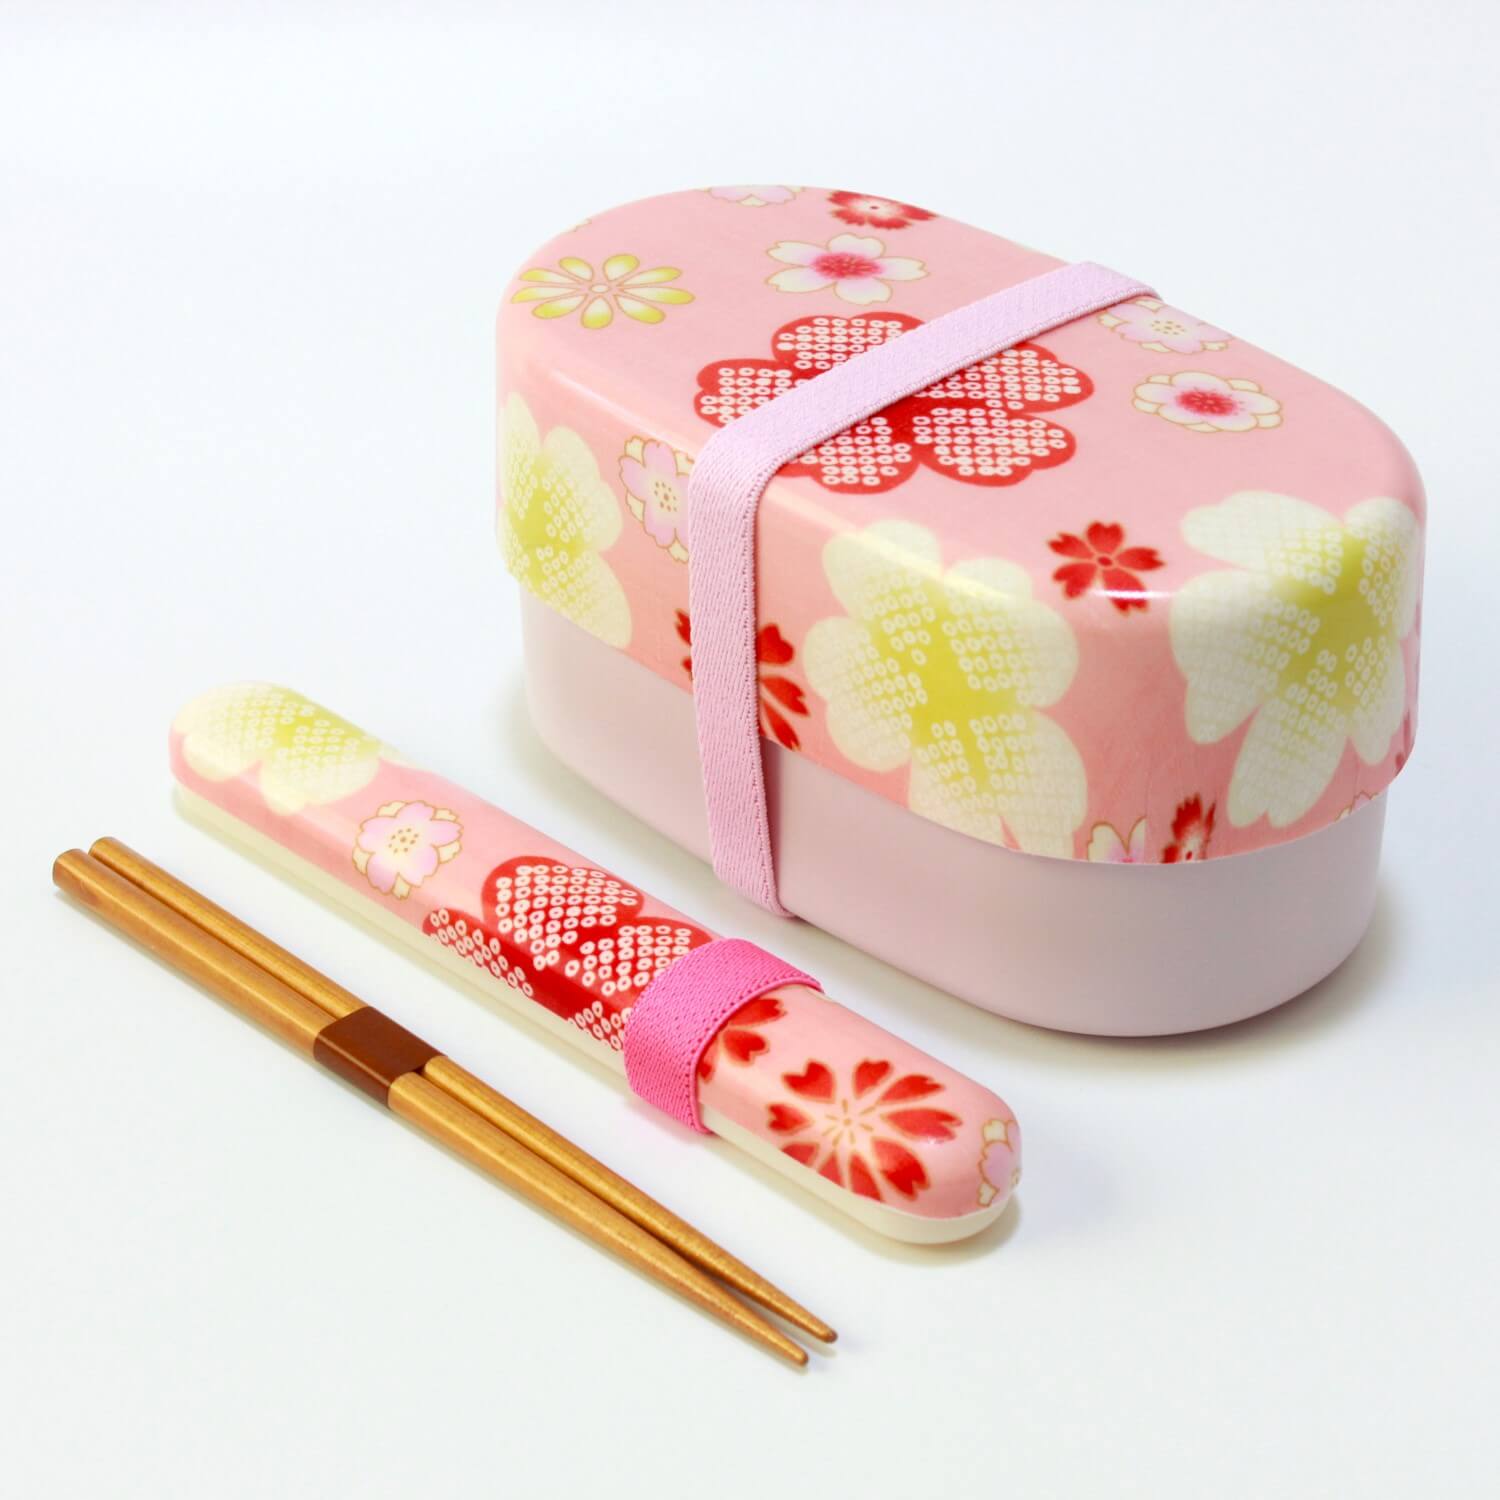 bento box and chopsticks set